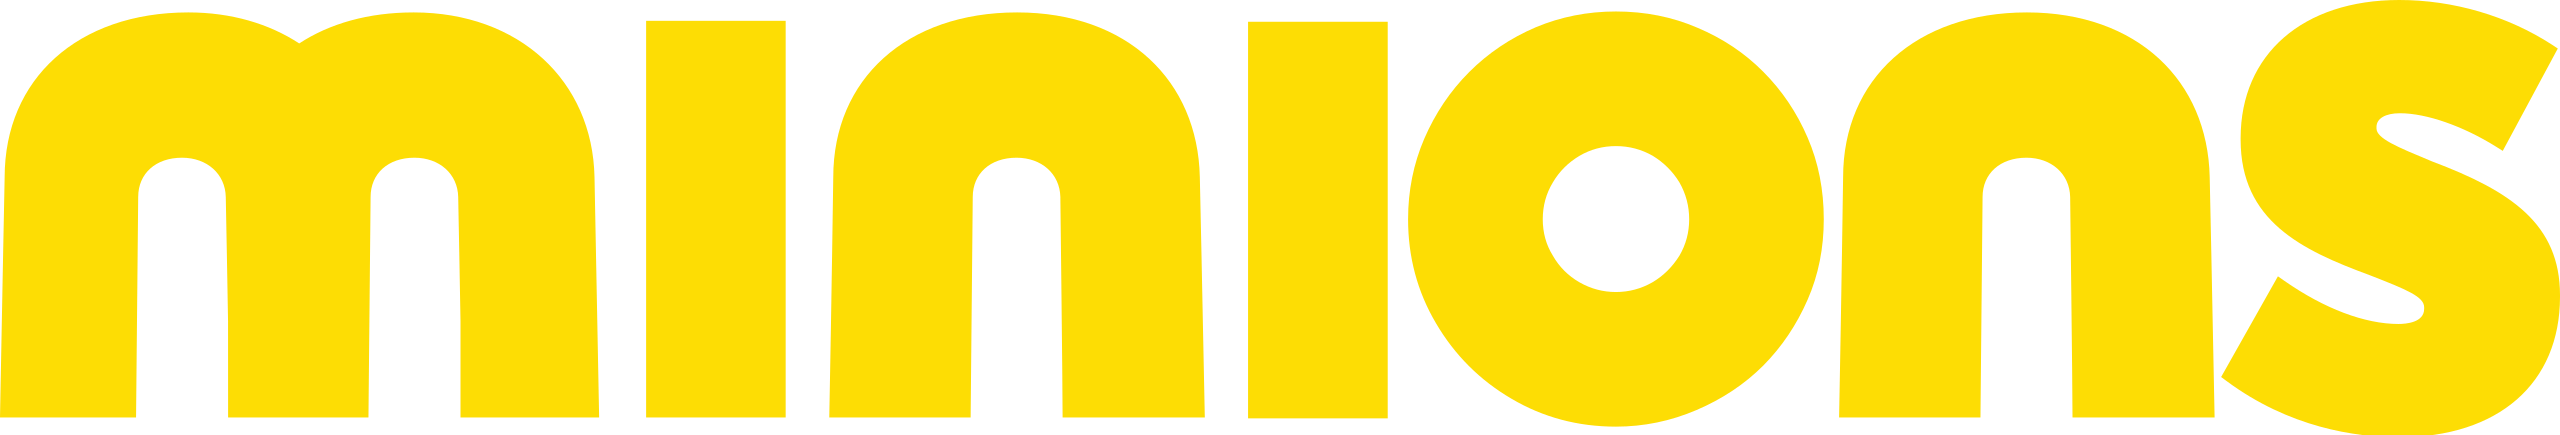 Minion logo